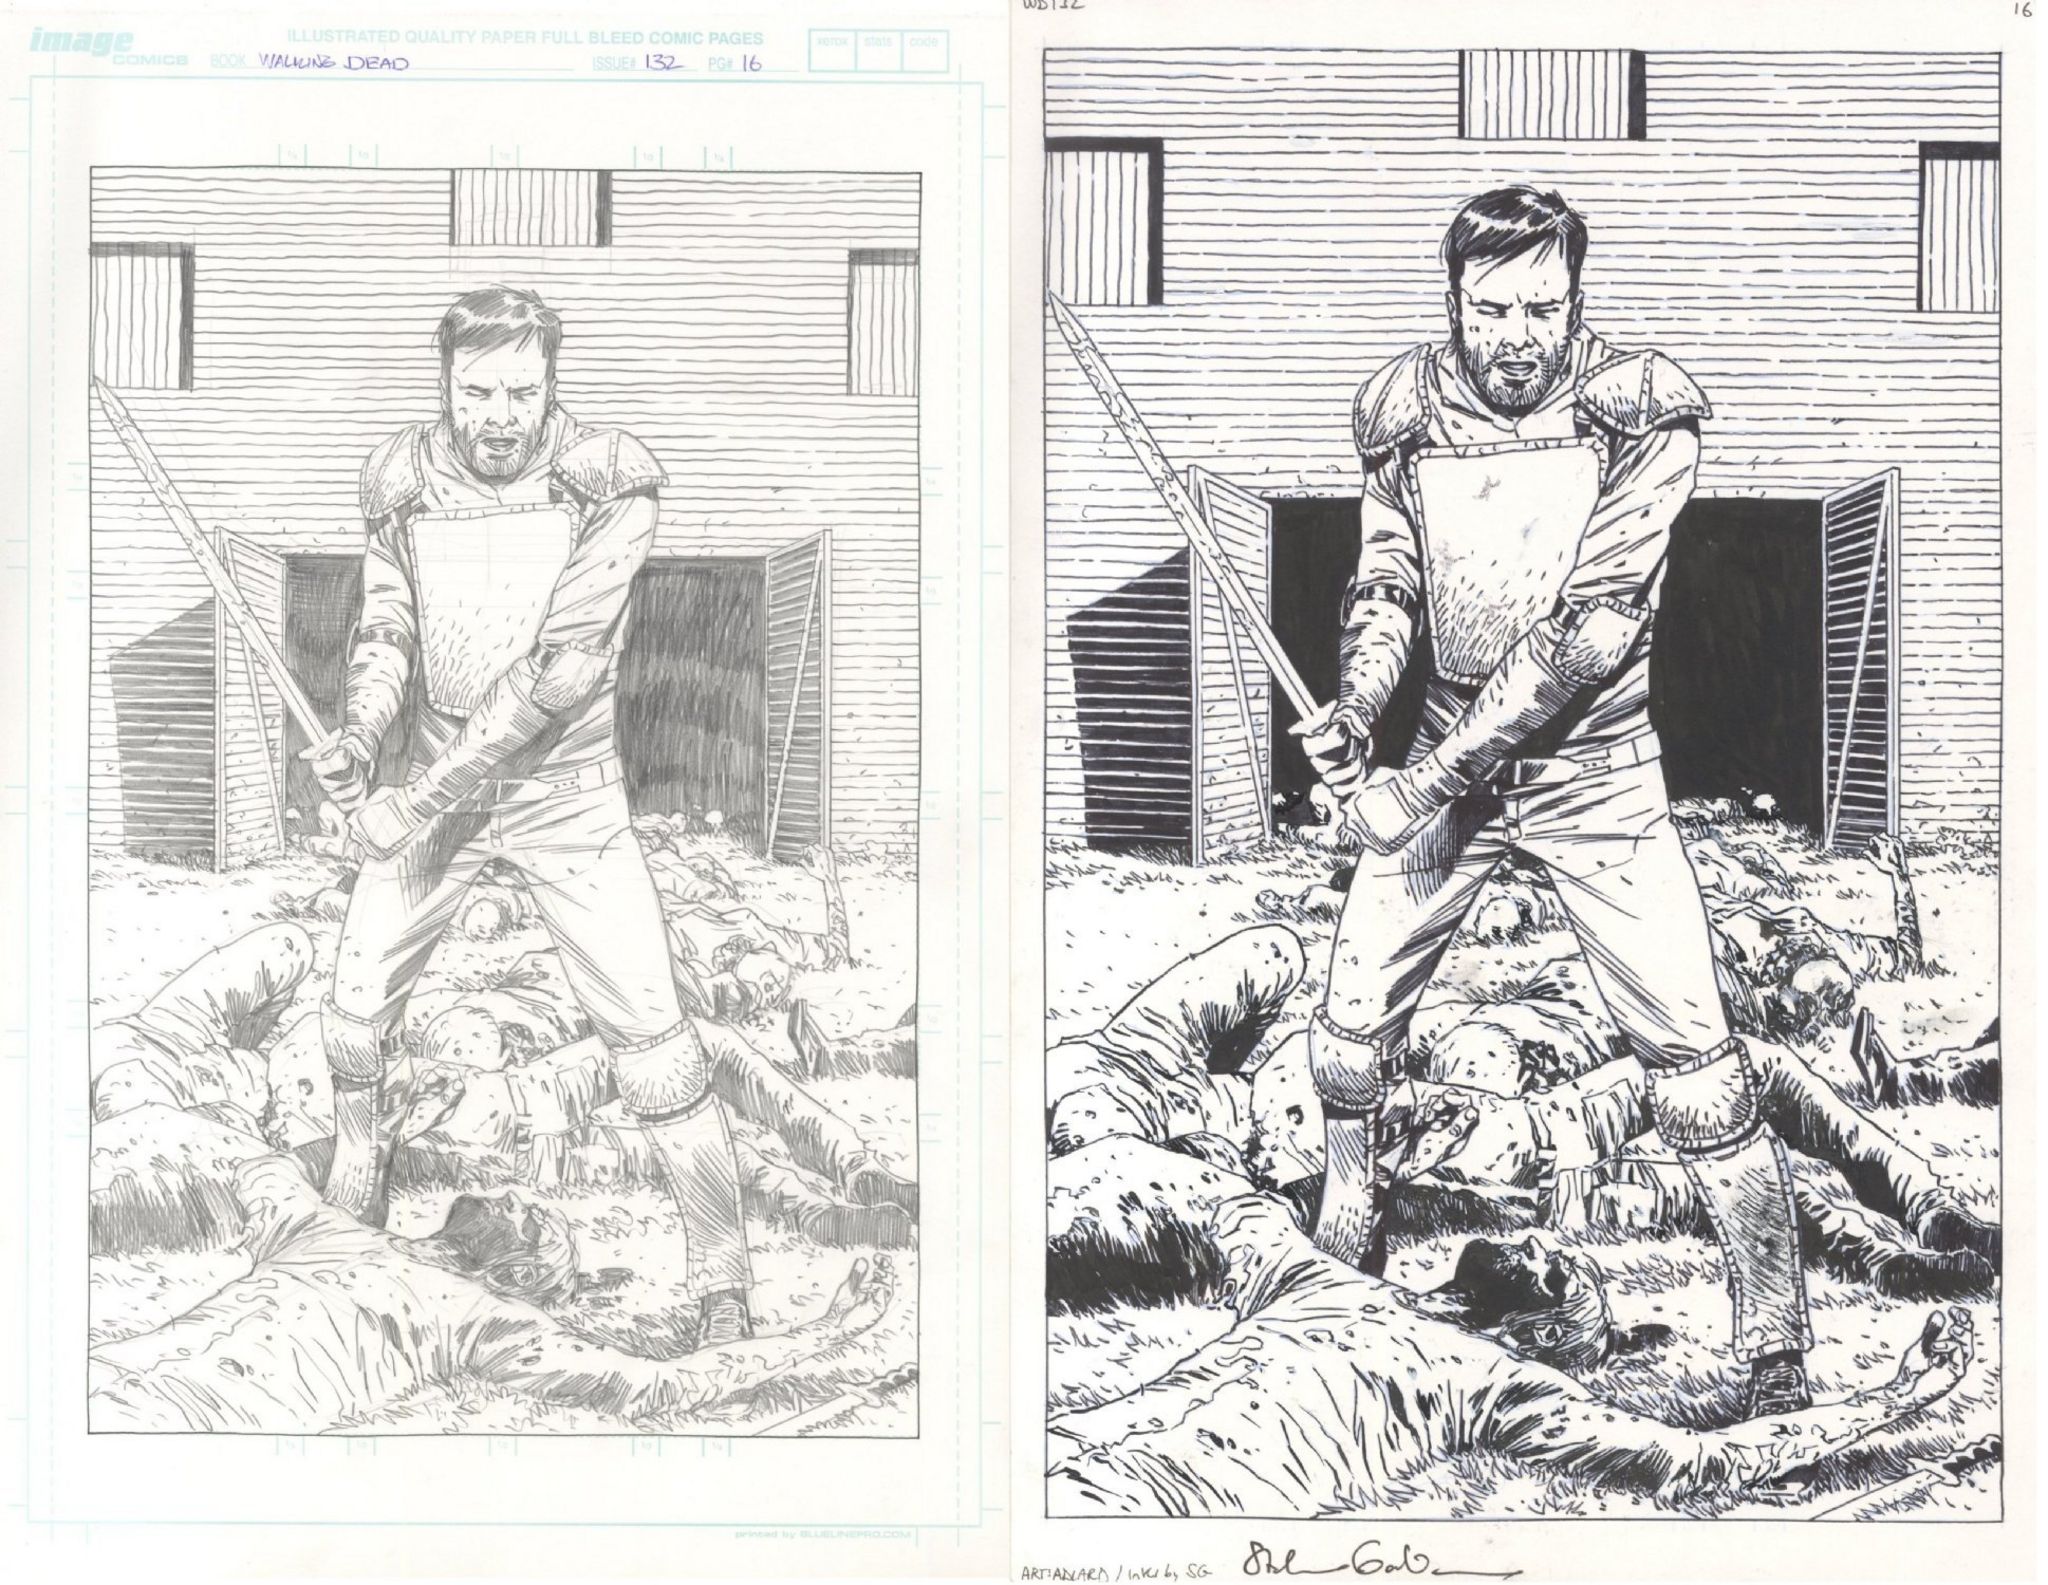 Original drawings by Charlie Adlard for Walking Dead comic